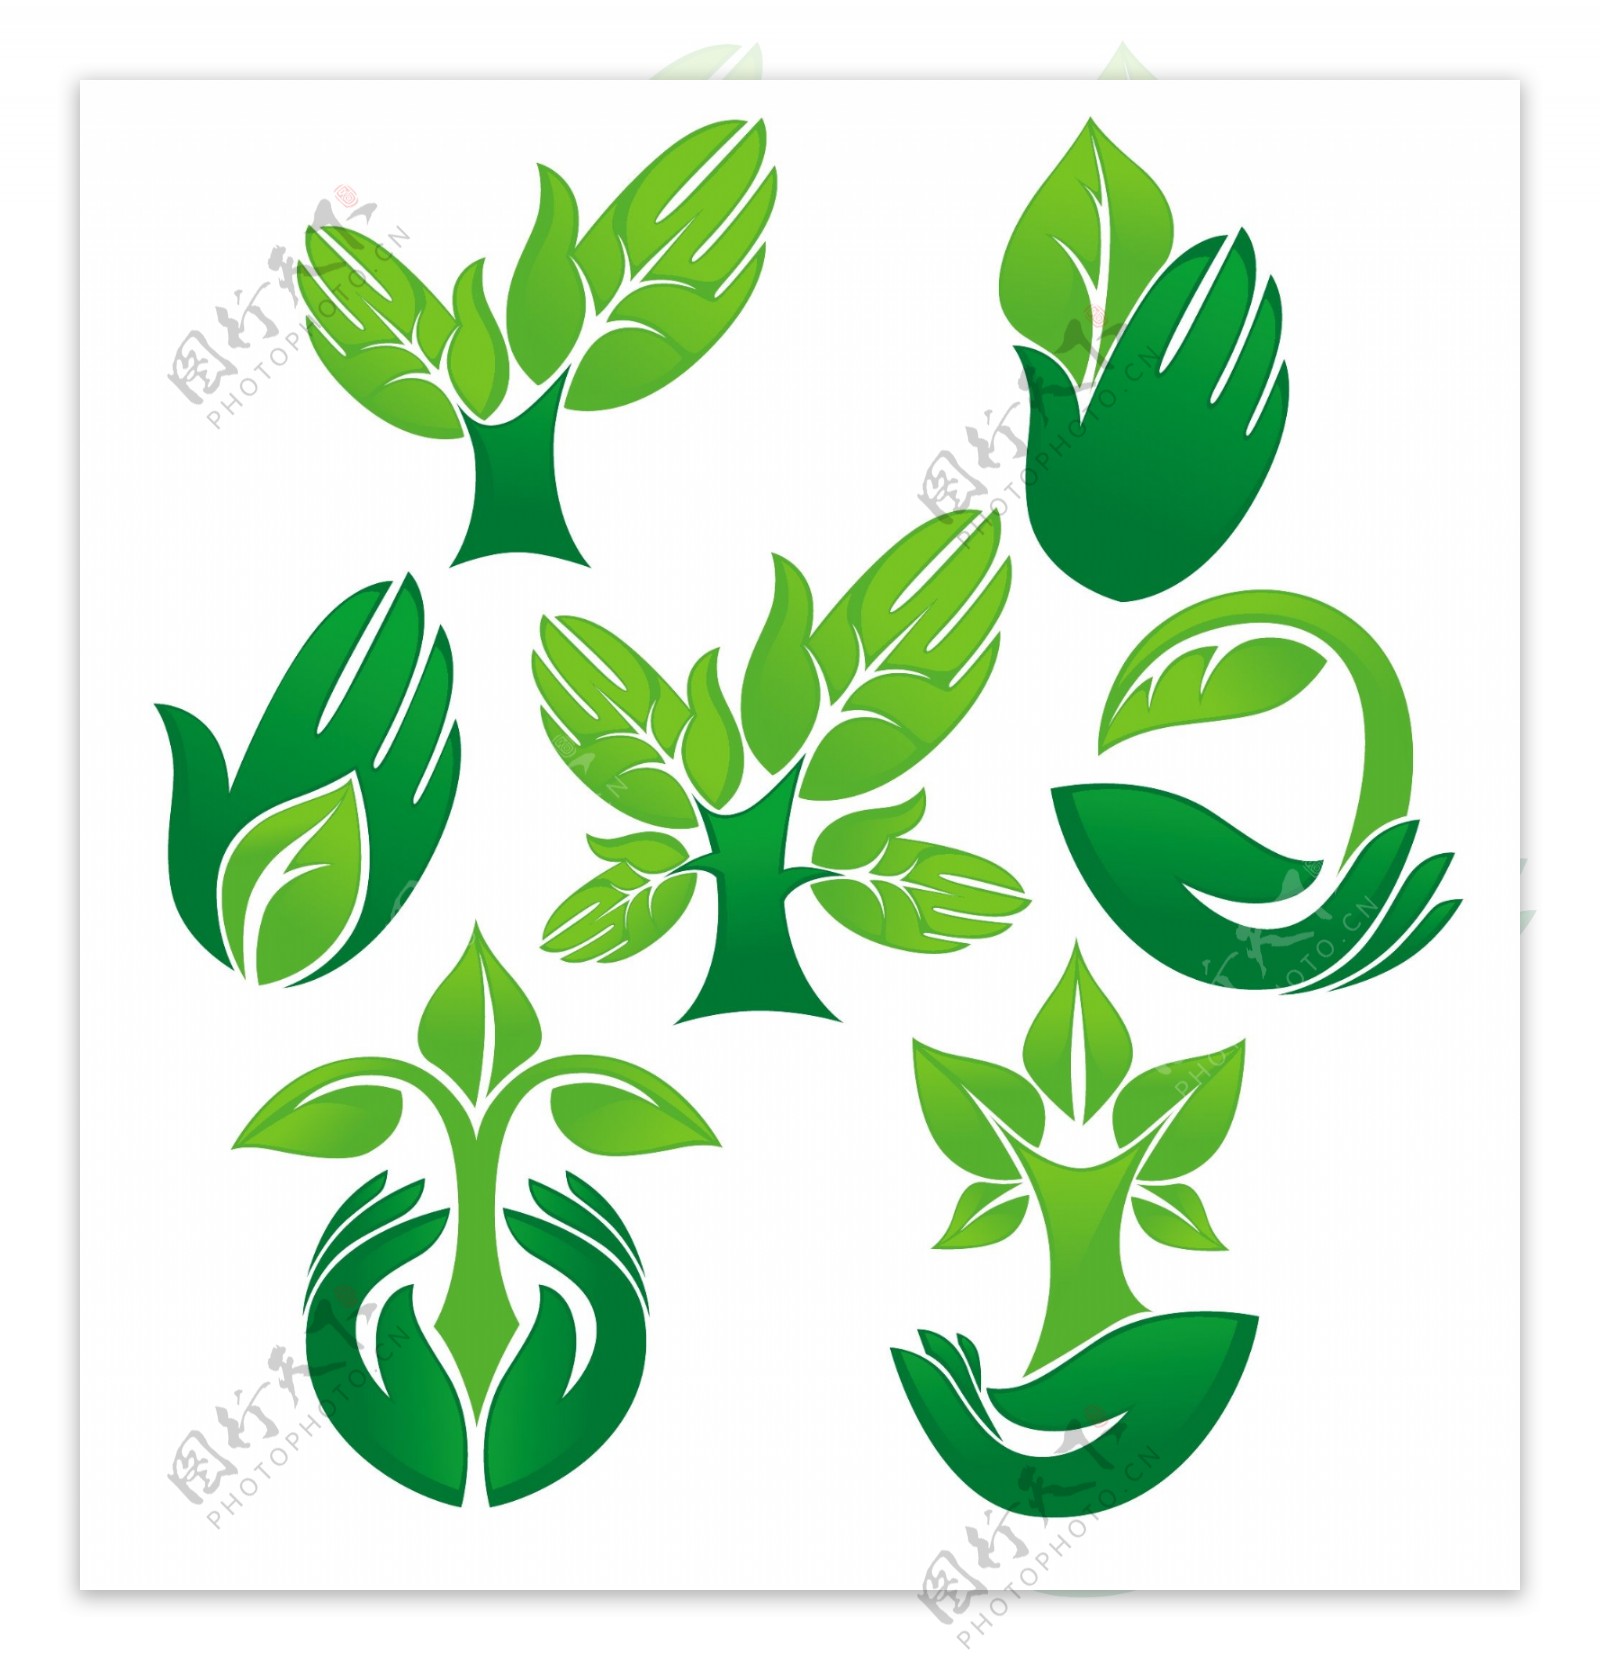 绿色环保手心logo